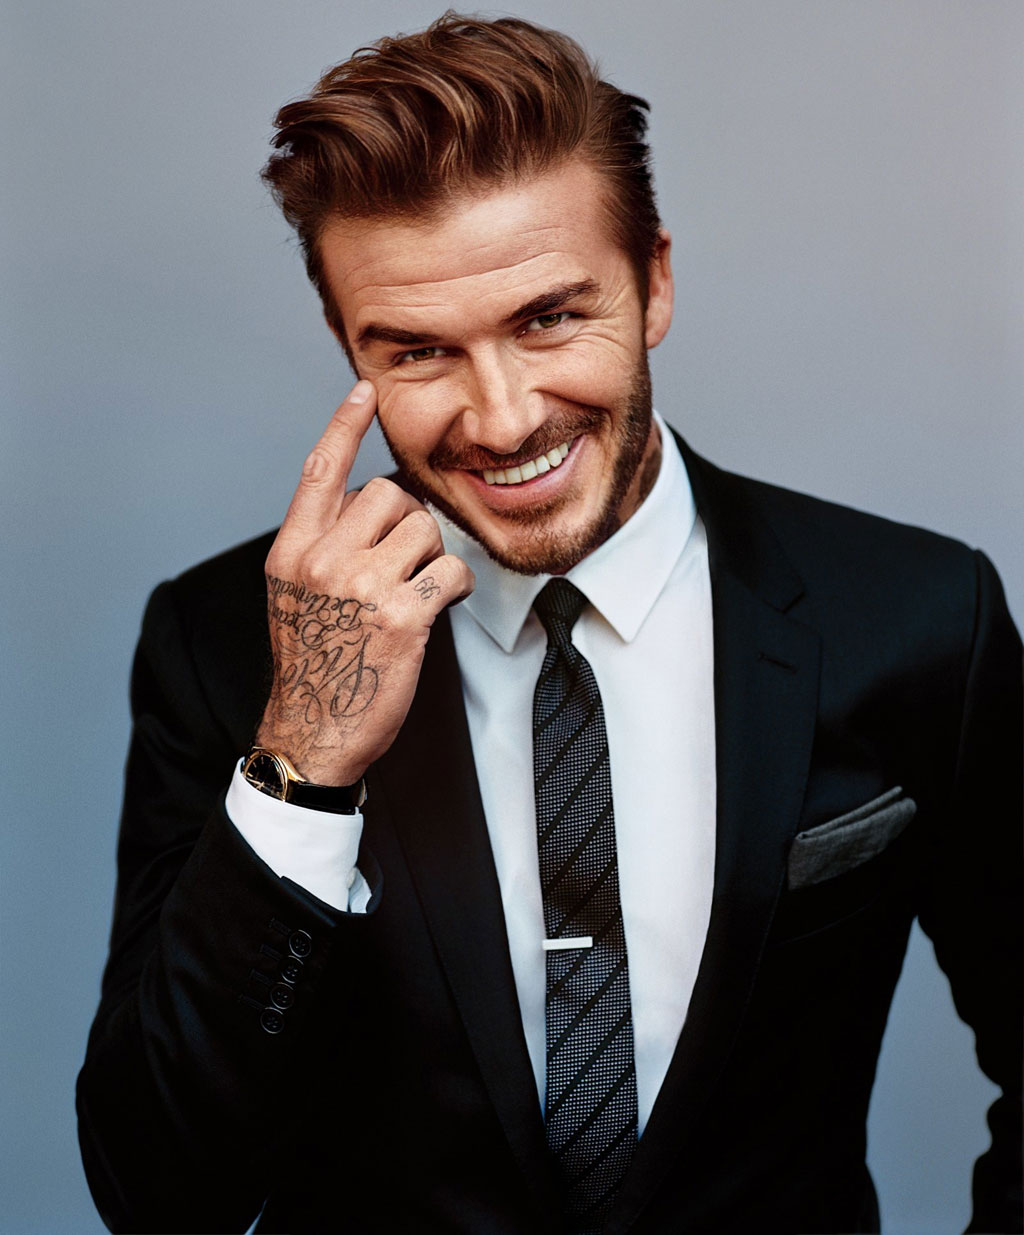 David Beckham chống bạo lực học đường